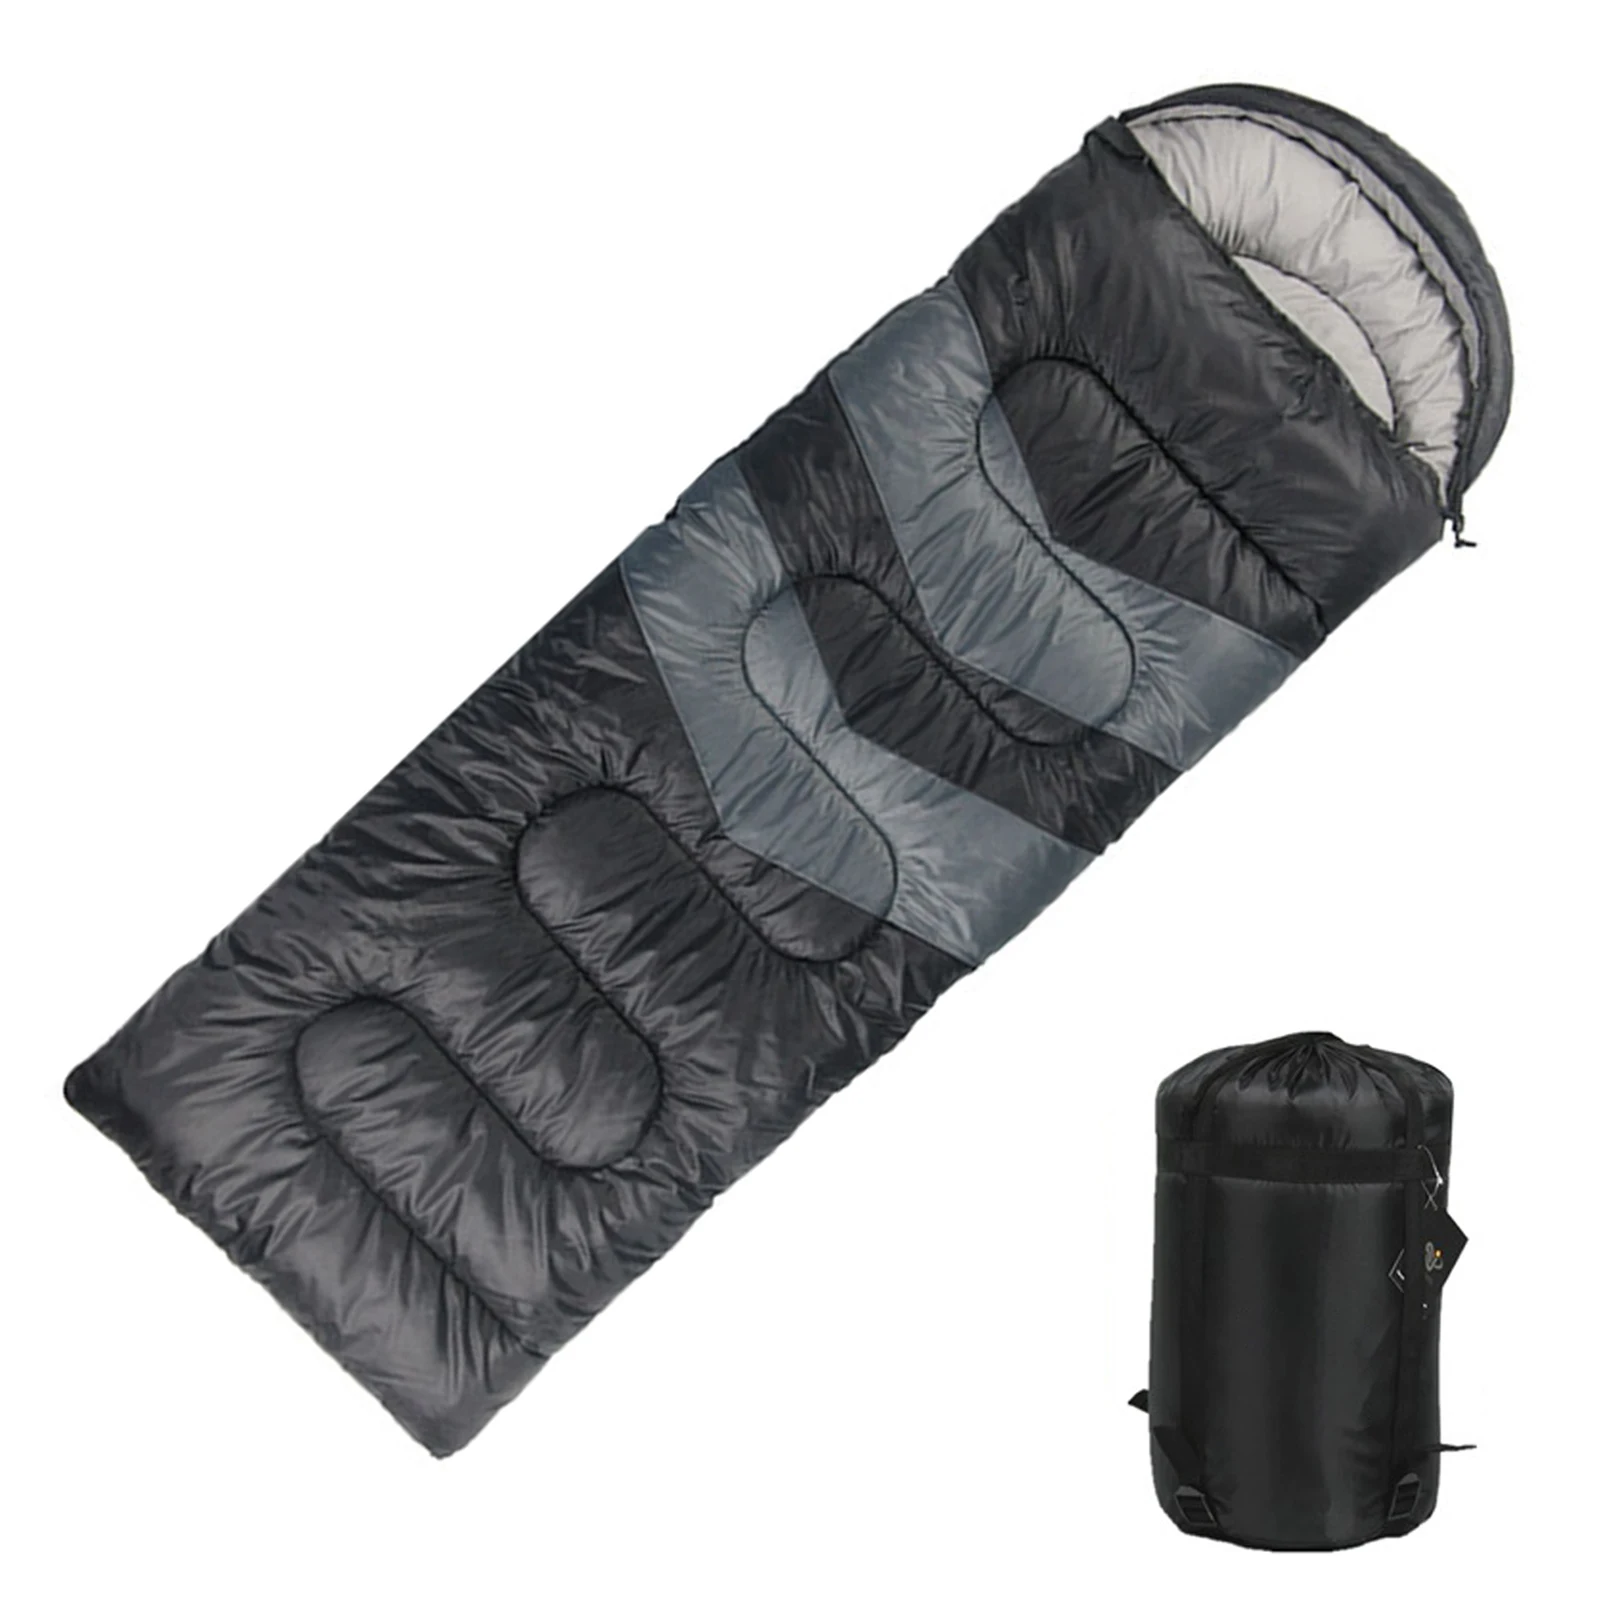 

Спальный мешок для кемпинга, детский спальный мешок для пешего туризма и кемпинга, легкий, подходит для теплой и холодной погоды